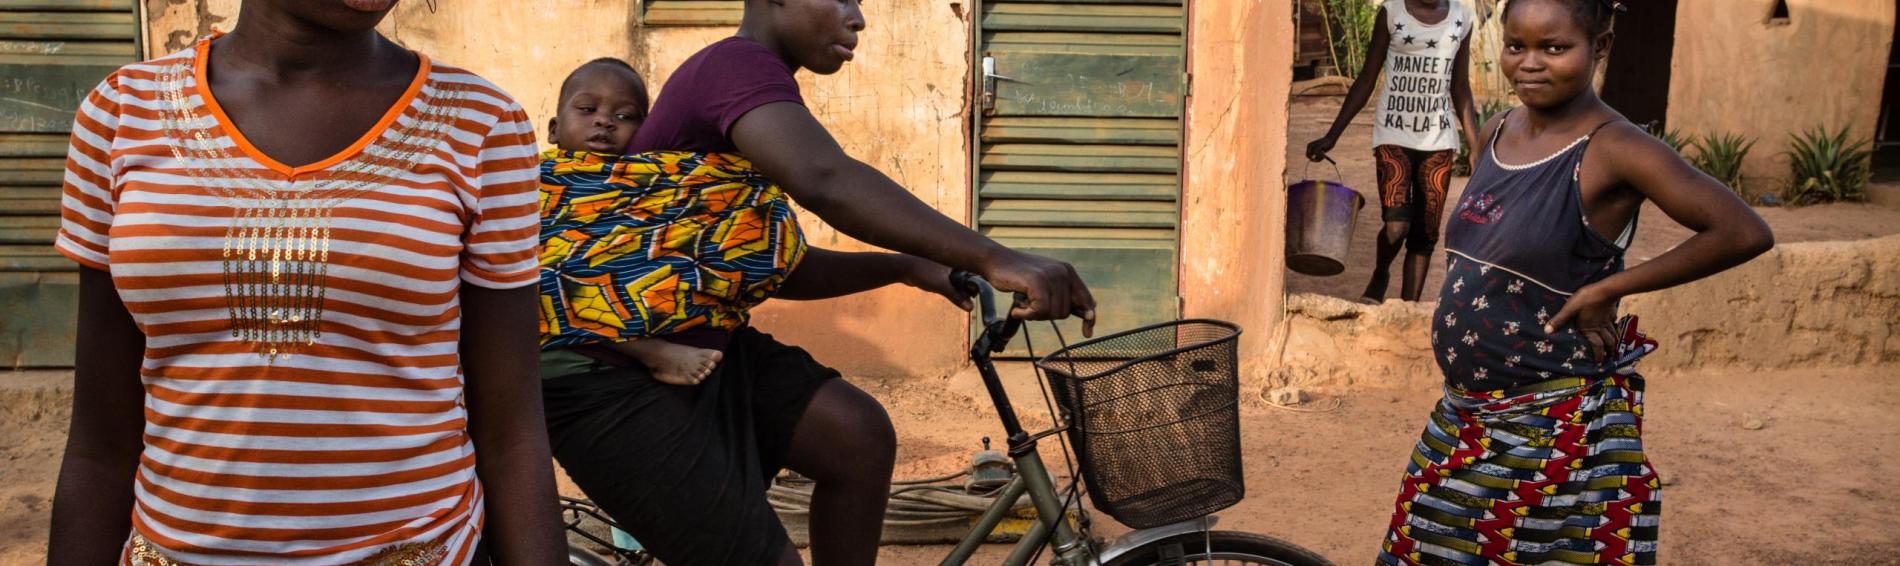 Drie jonge Burkinese vrouwen in een straat in Ouagadougou. Eén van hen zit op een fiets met haar baby in een doek om haar rug gebonden.